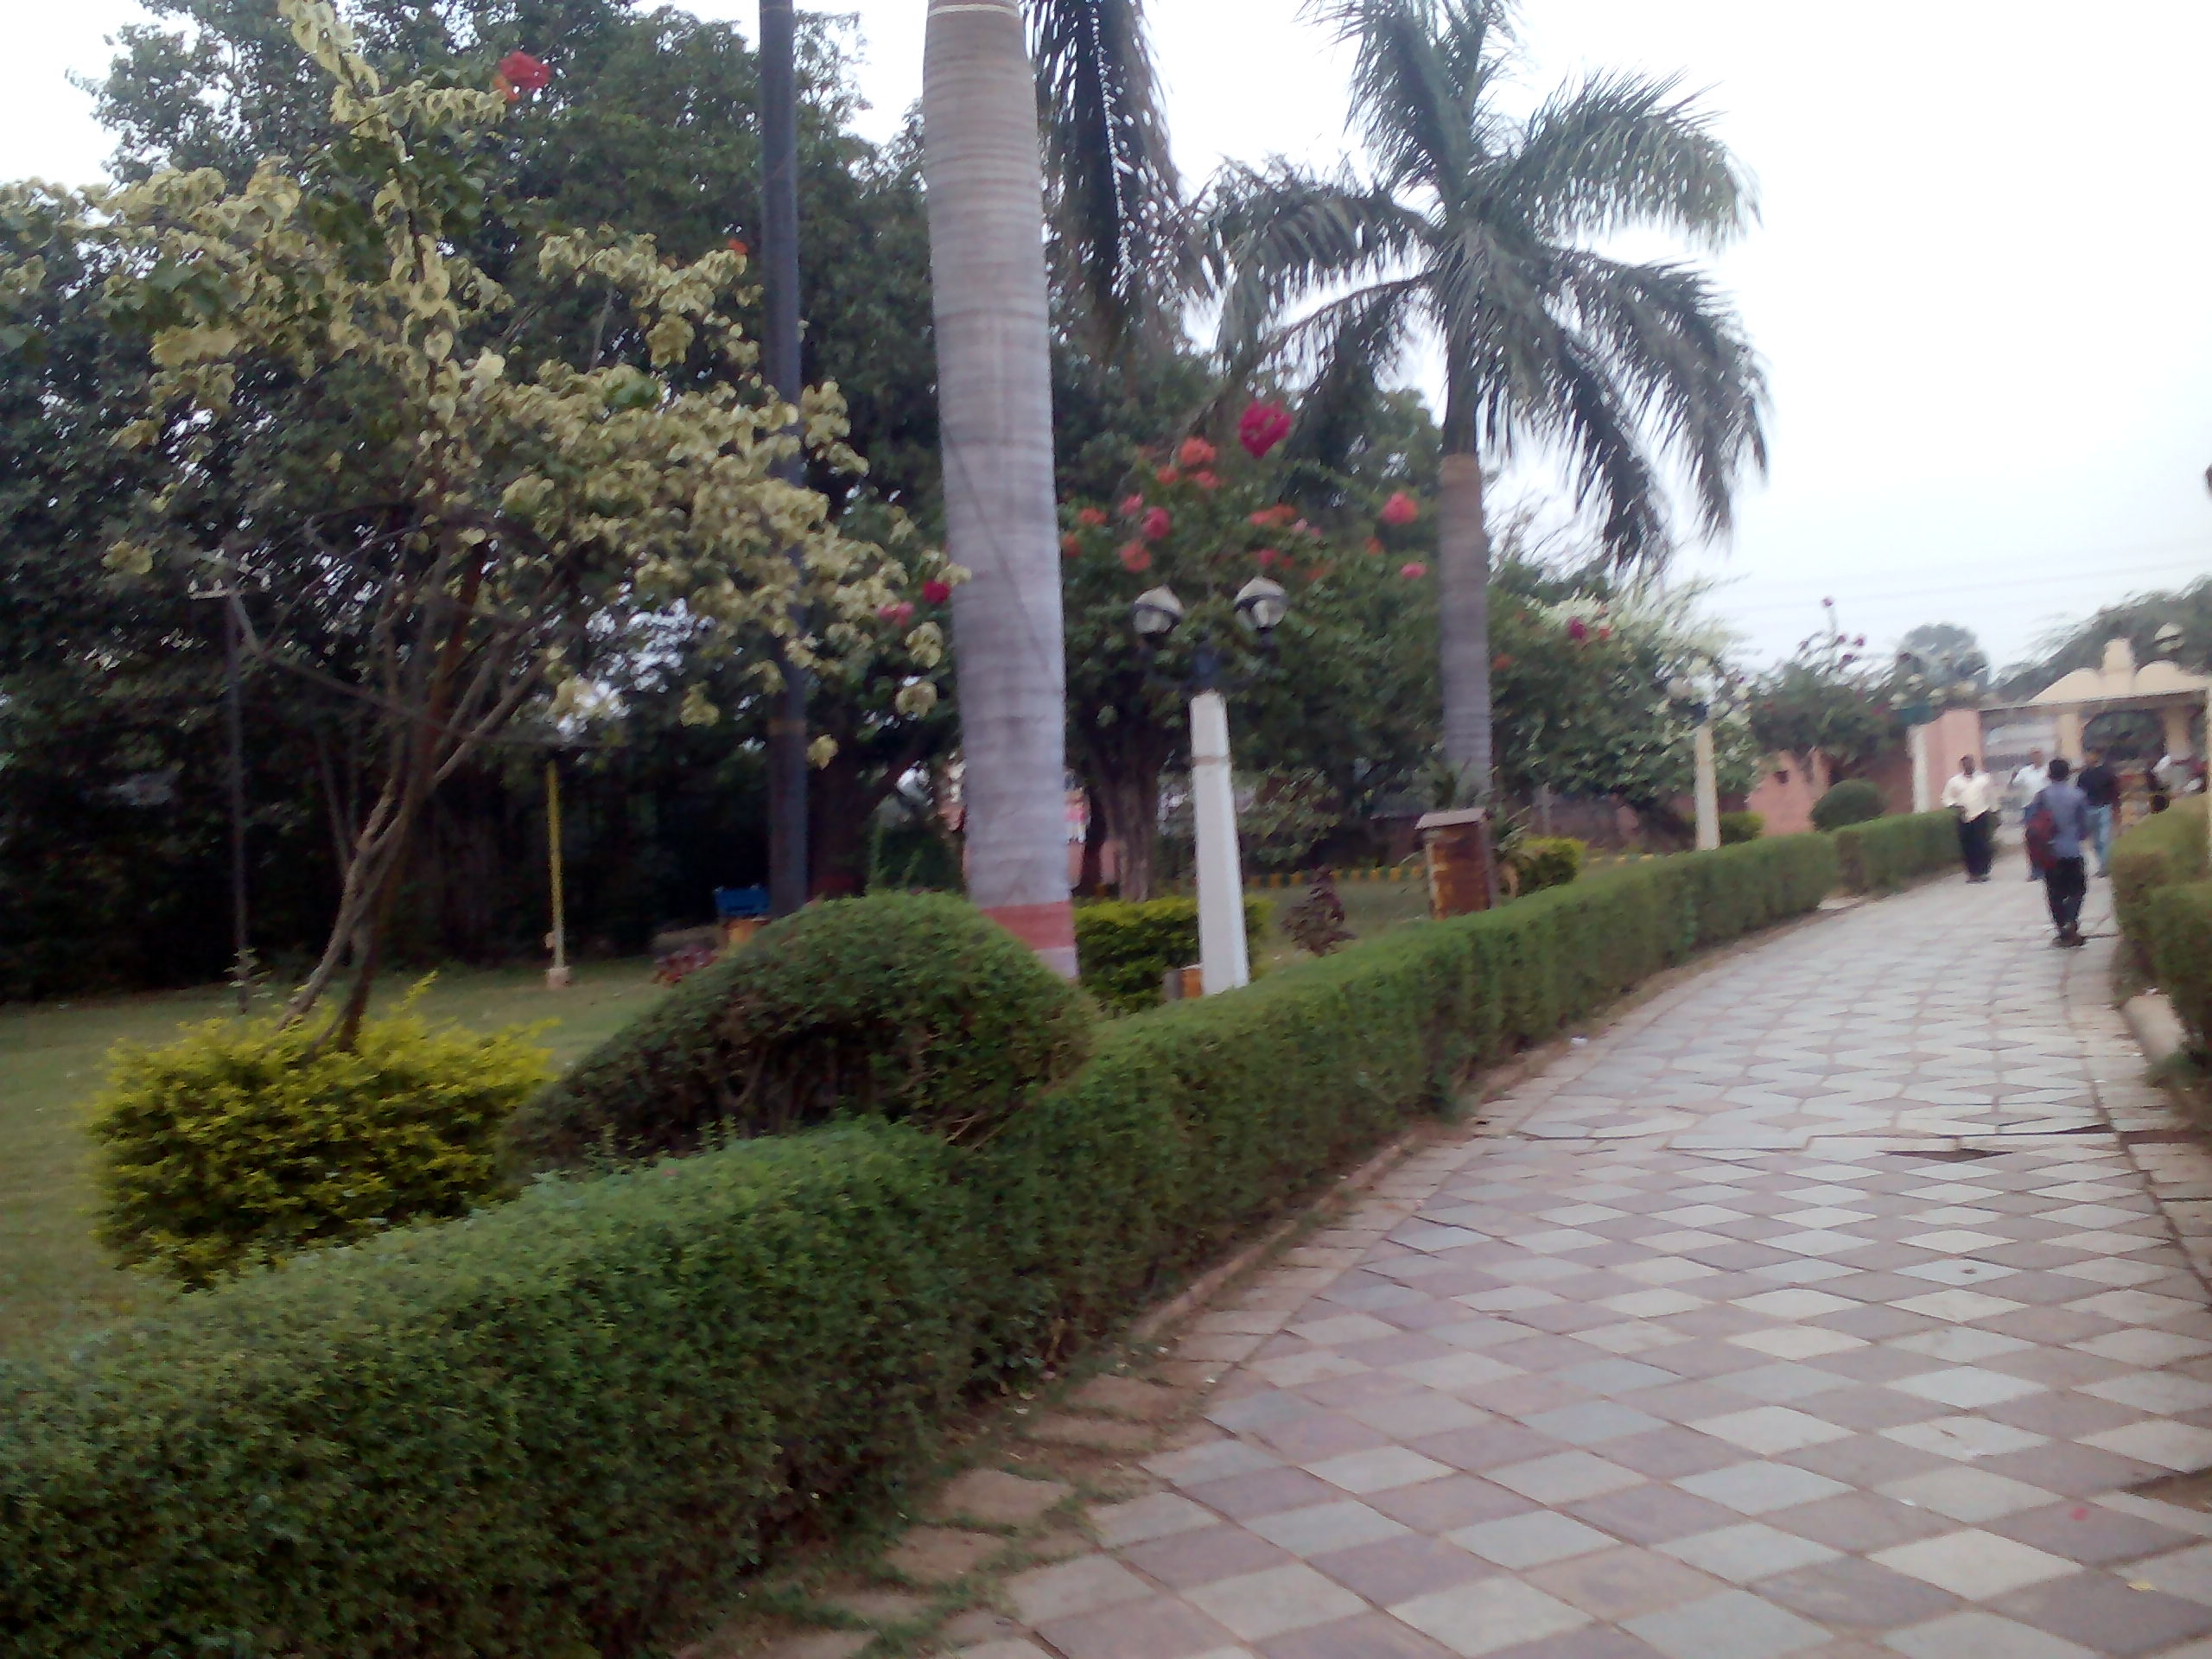 Chambal Gardens in Kota